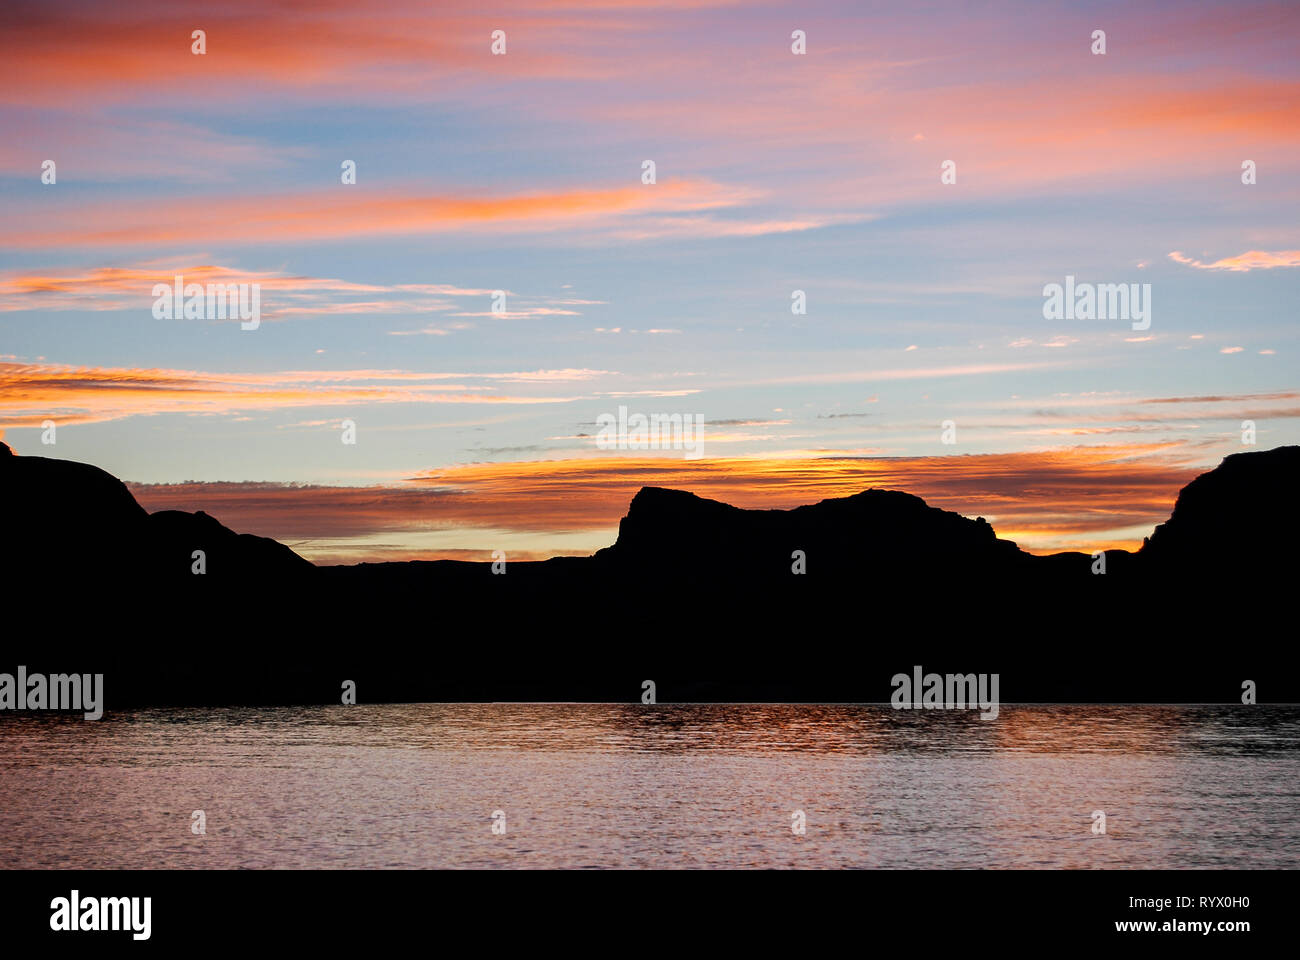 Ein Sommer Sonnenuntergang in der Wüste, See. Lake Powell, Arizona Sandstein Klippen und Felsen das Tiefblaue Wasser wie ein Schwimmbad. Stockfoto